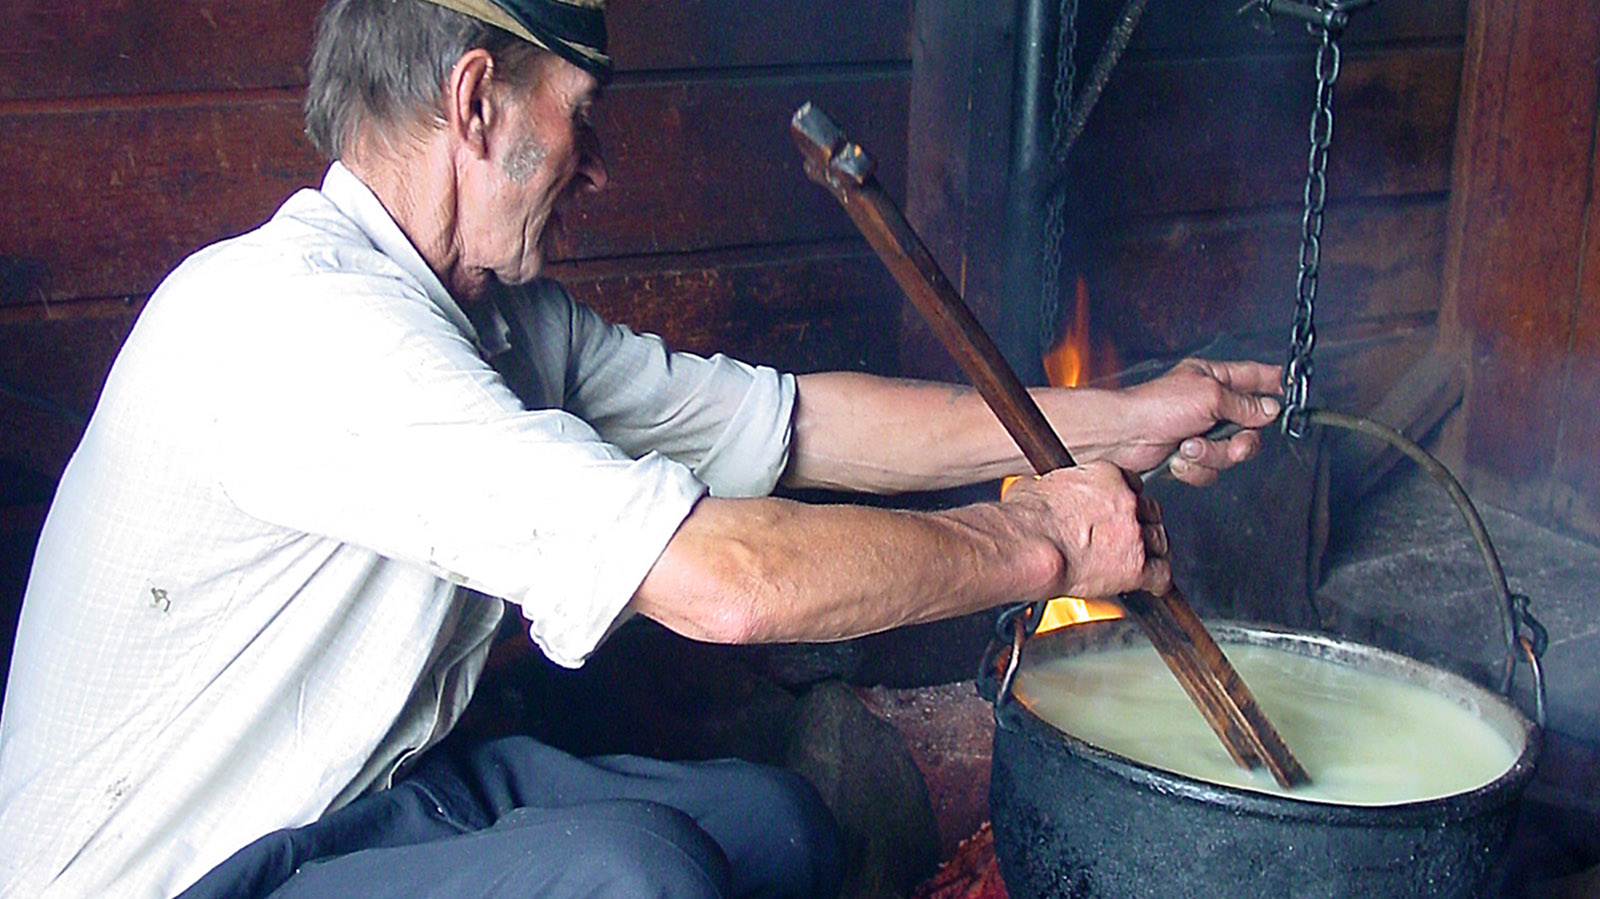 Jan Urbas bei der Käsefertigung. In der Hand: der geräucherte Hartkäse aus Schafsmilch "Oscypek" - eine regionale Spezialität. Foto: Hilke Maunder 